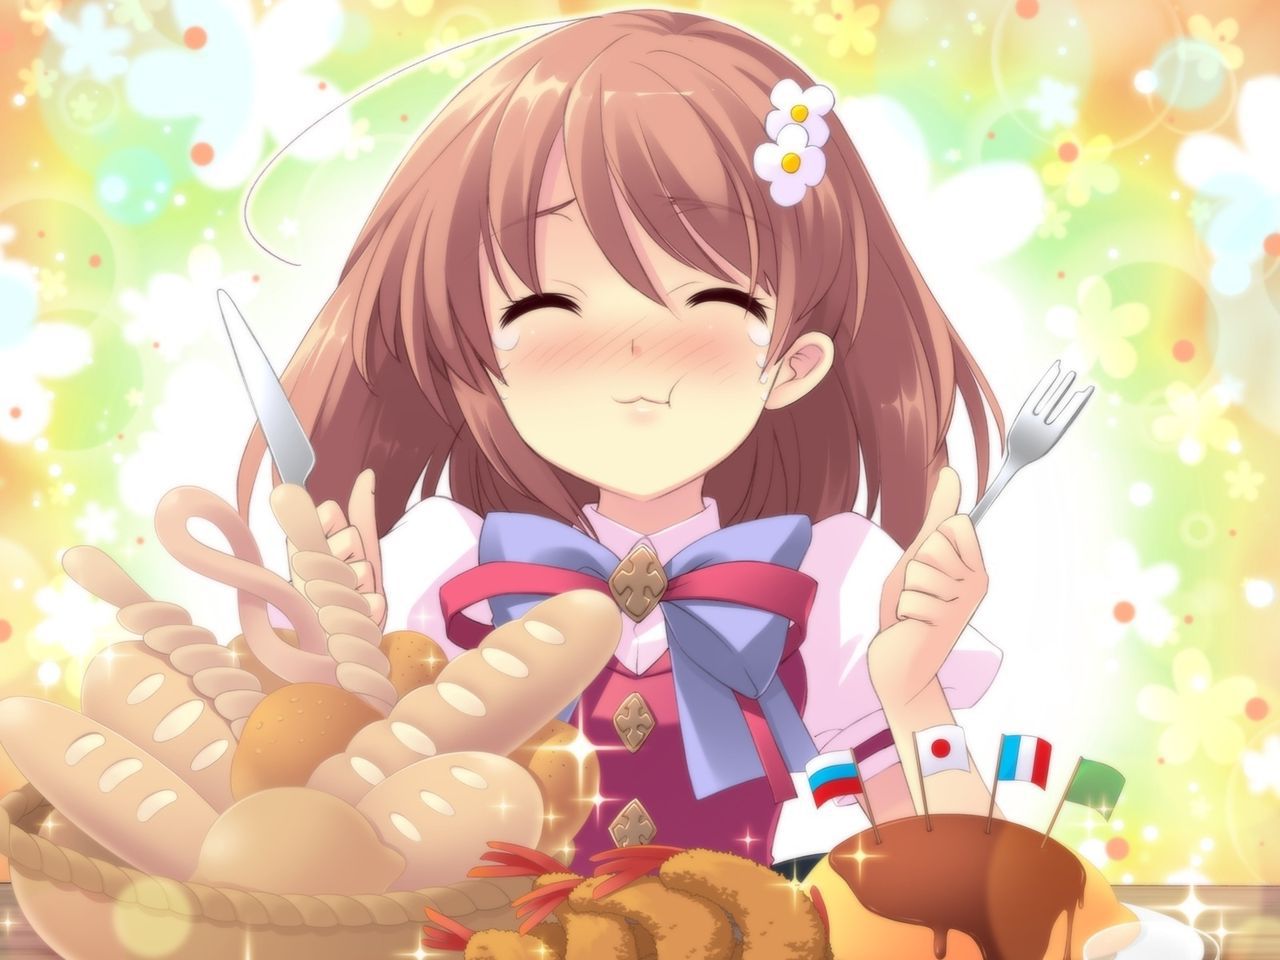 [2次] eating food she is a cute girl second image [non-18] 21